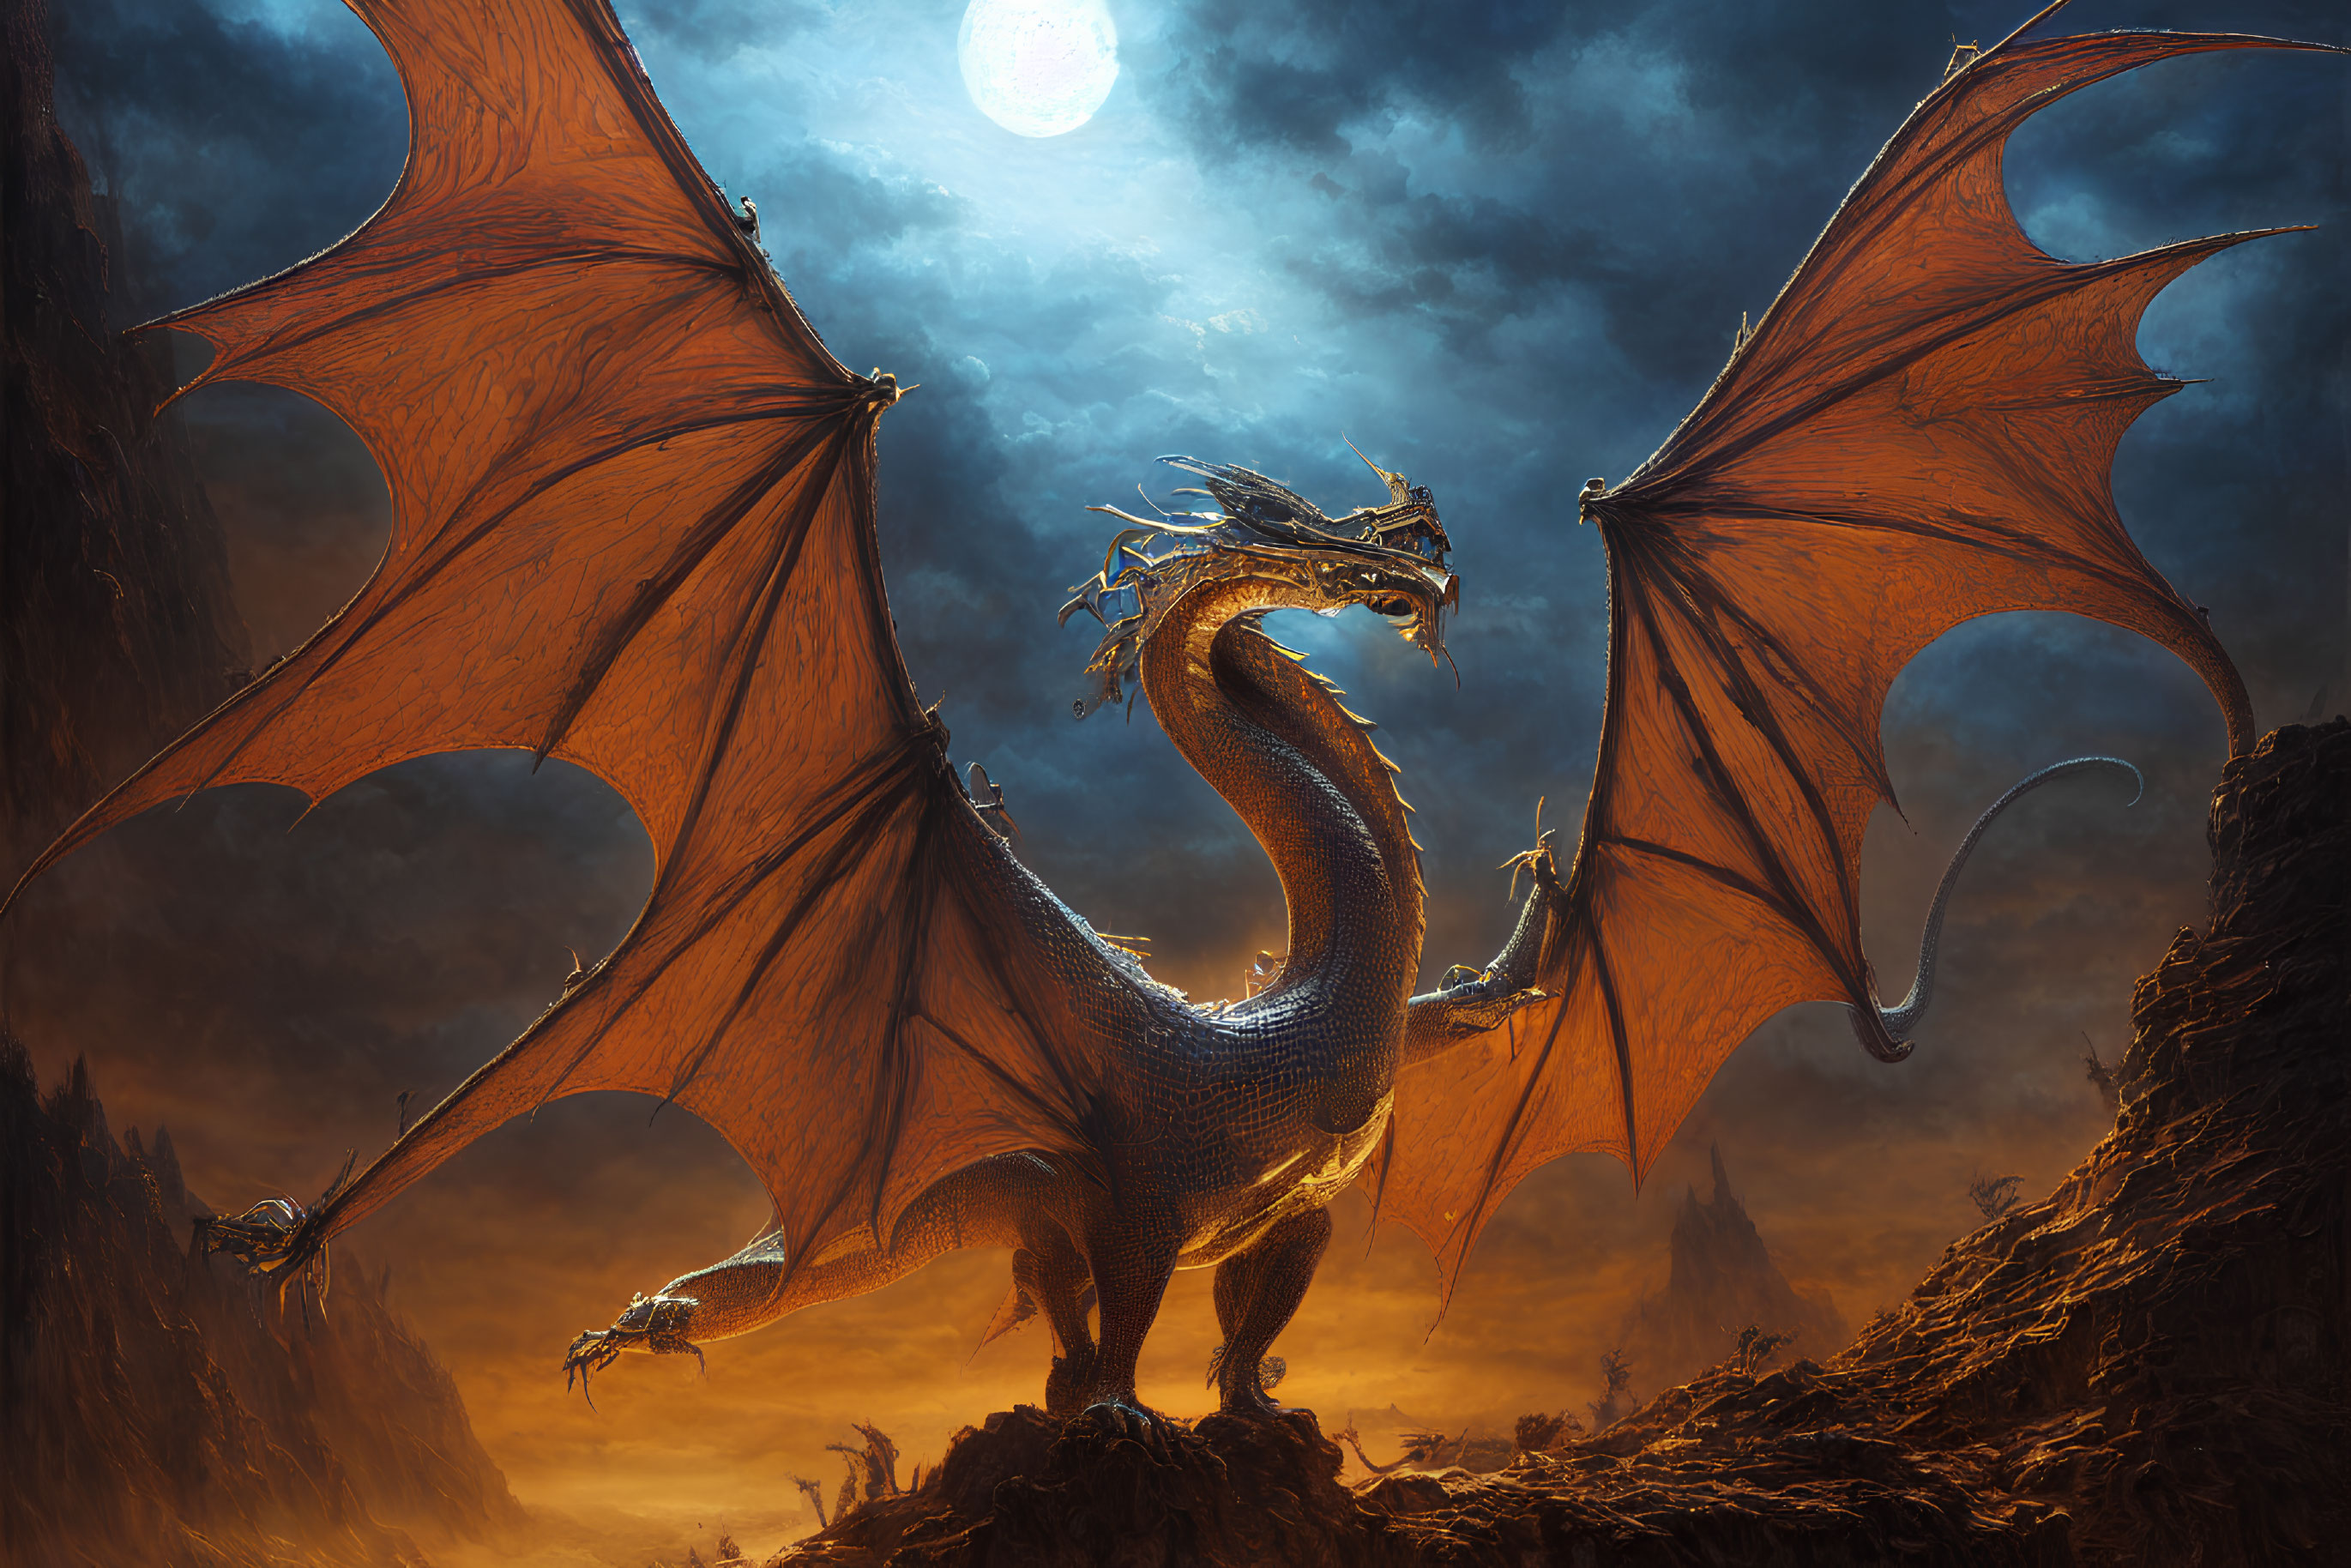 Majestic dragon with fiery-orange wings on rocky terrain under moonlit sky